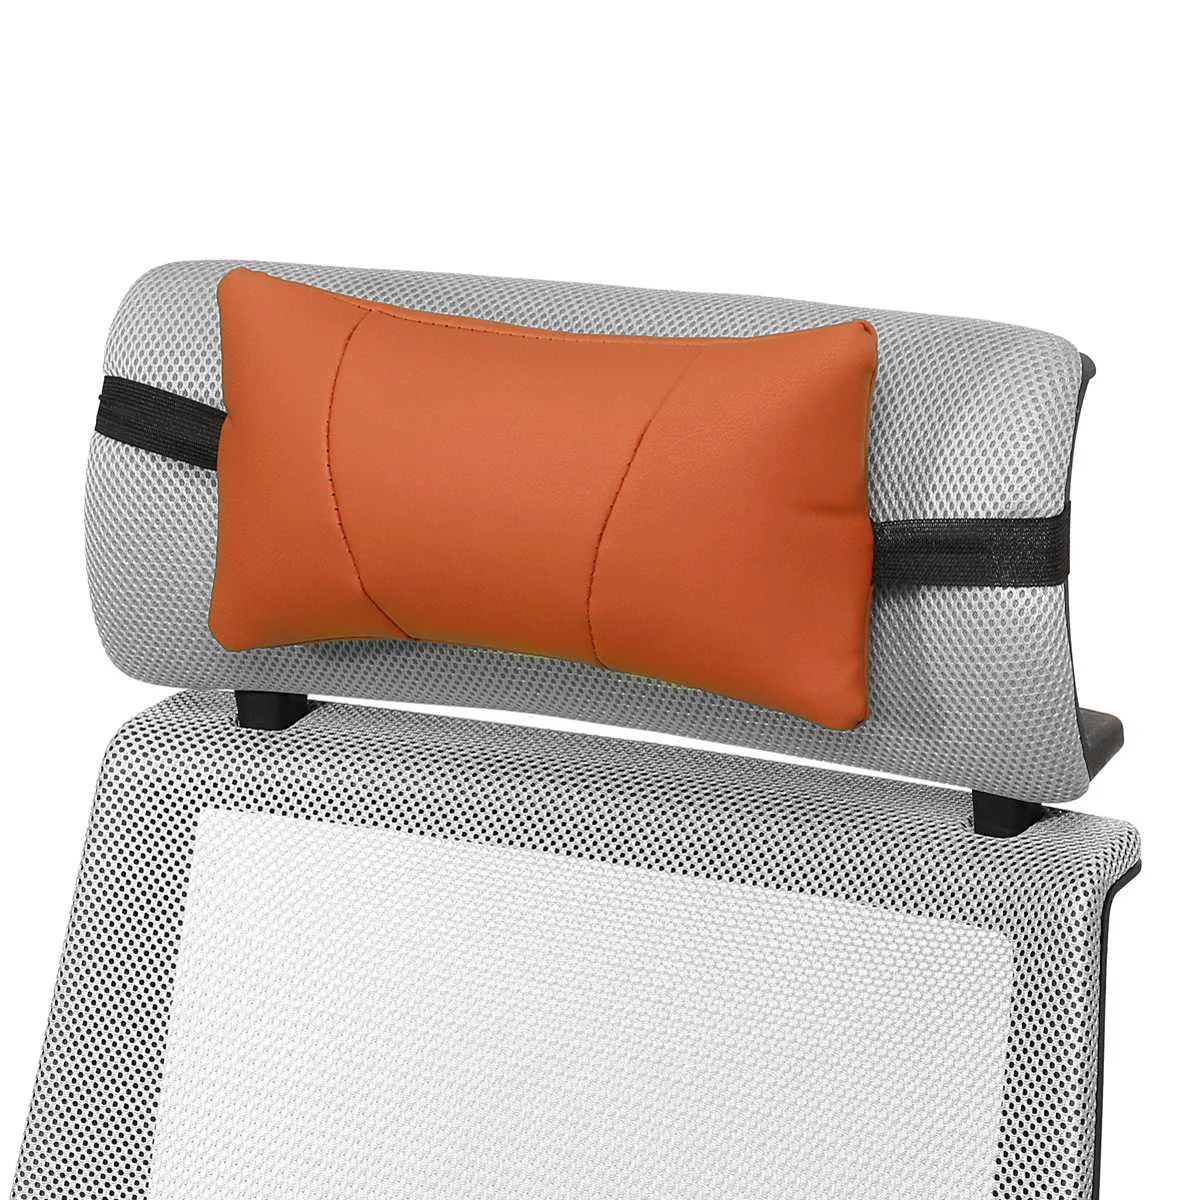 Мягкая кожаная Автомобильная подушка для шеи и заднего сиденья, поясничная поддержка, массажер, поясная подушка, подушка для стула, сиденье, облегчающая боль, роскошная губка - Название цвета: Browm Headrest